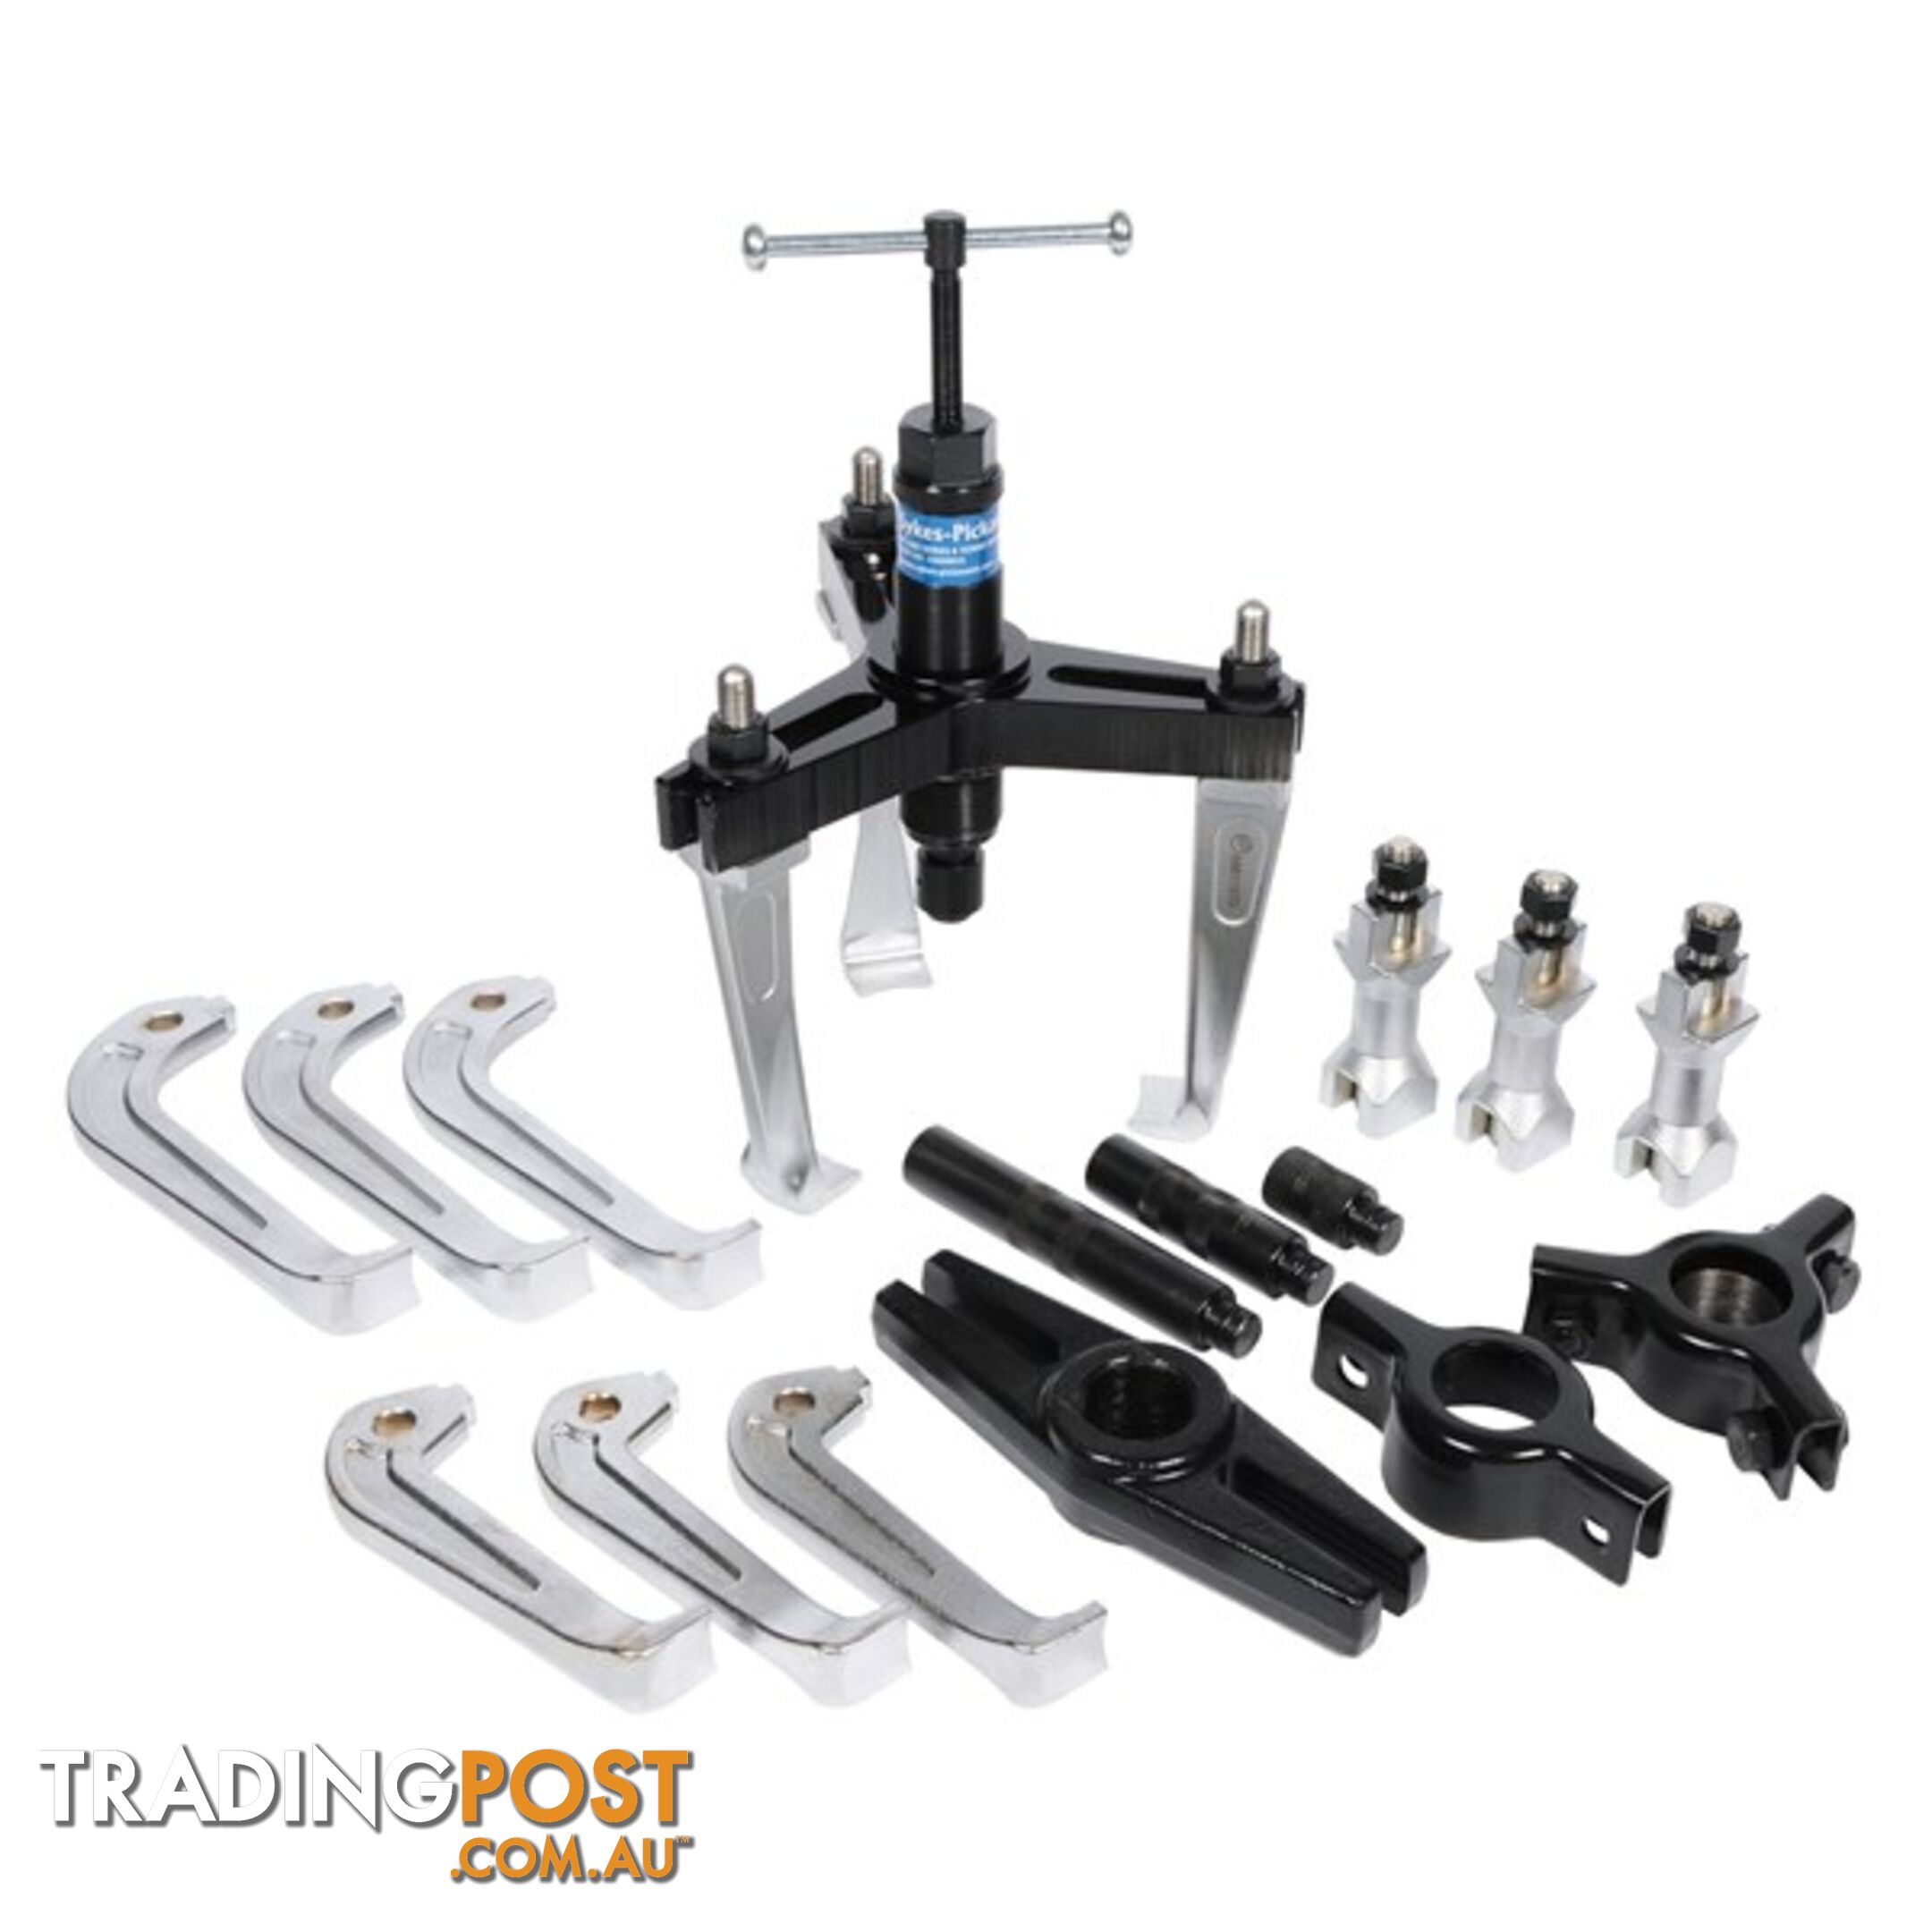 Sykes Pickavant Hydraulic Combination Twin/Triple Leg Puller Kit SKU - 155054